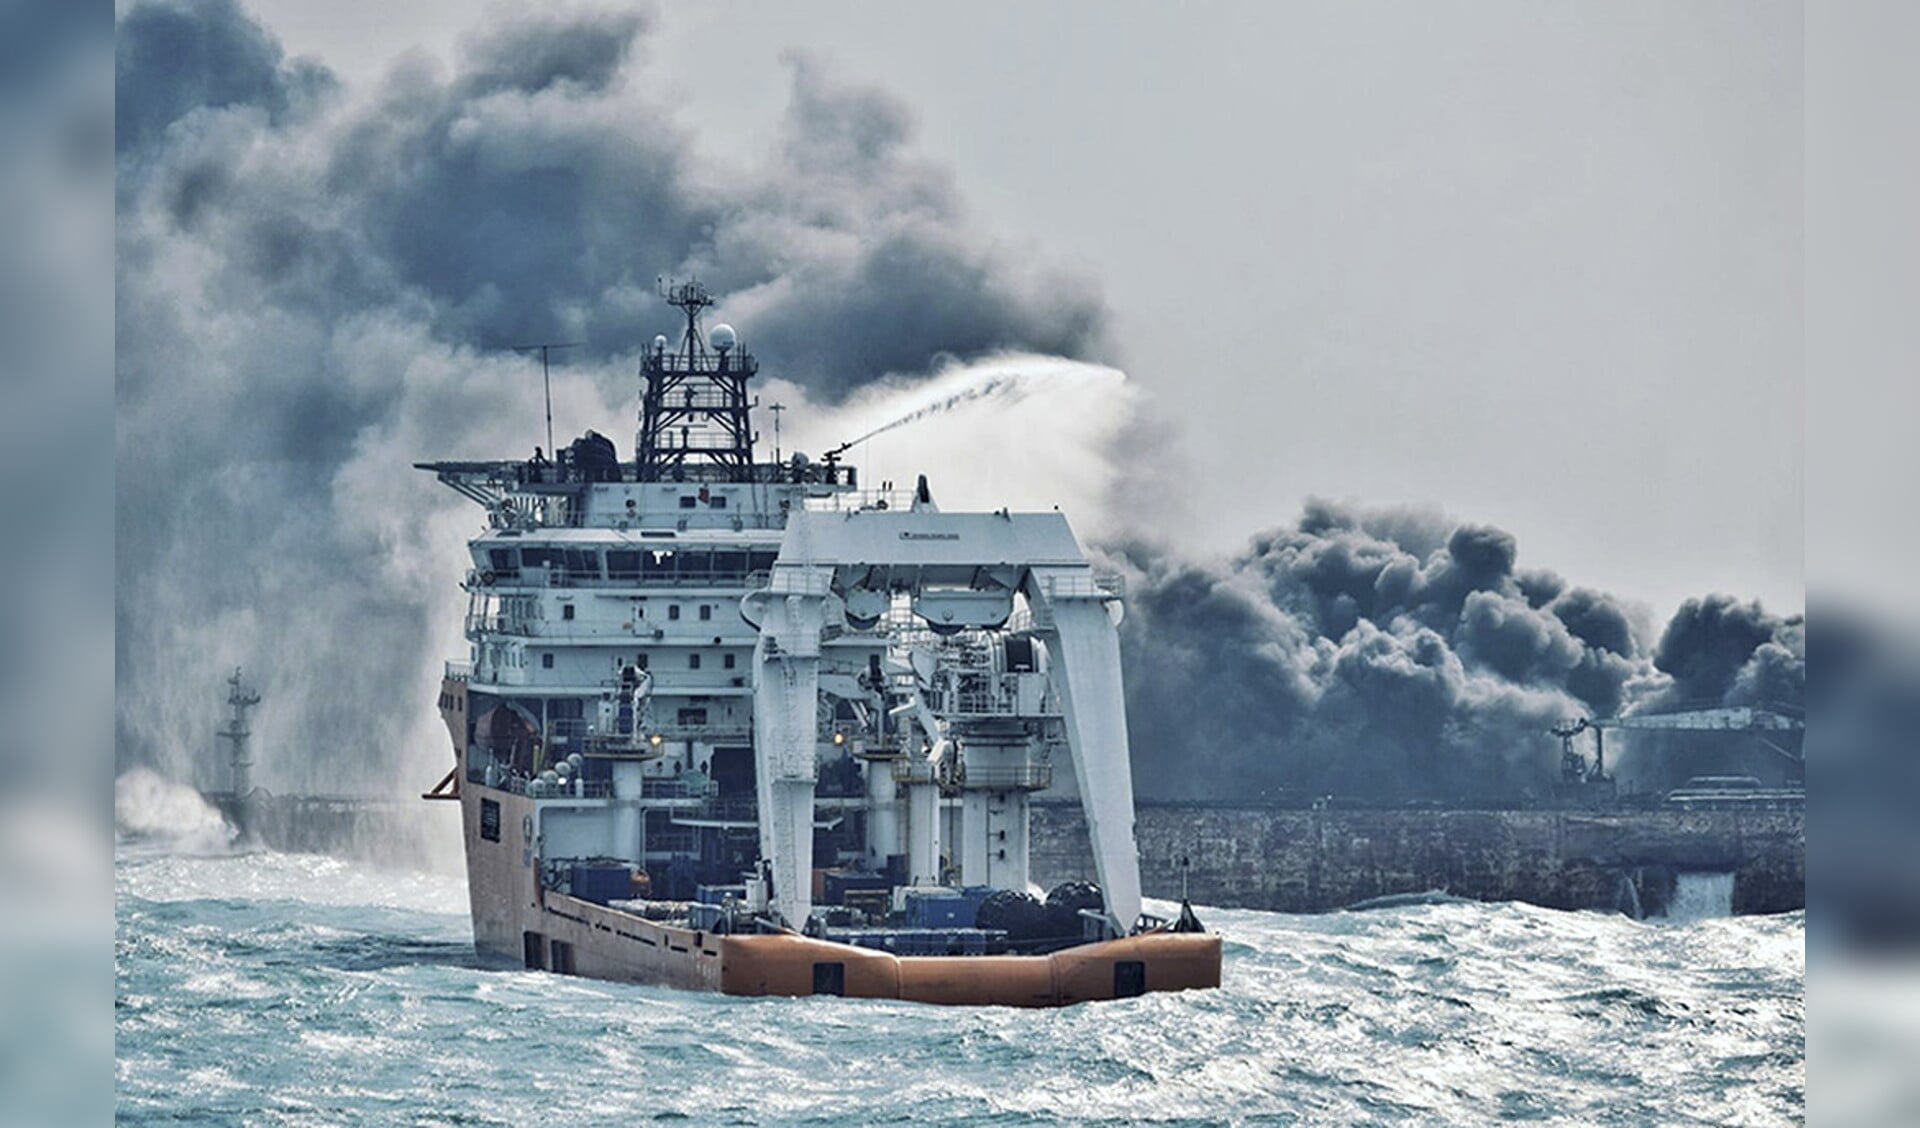 De bemanning van een blusboot probeert een einde te maken aan brand op de olietanker Sanchi in de Oost-Chinese Zee.